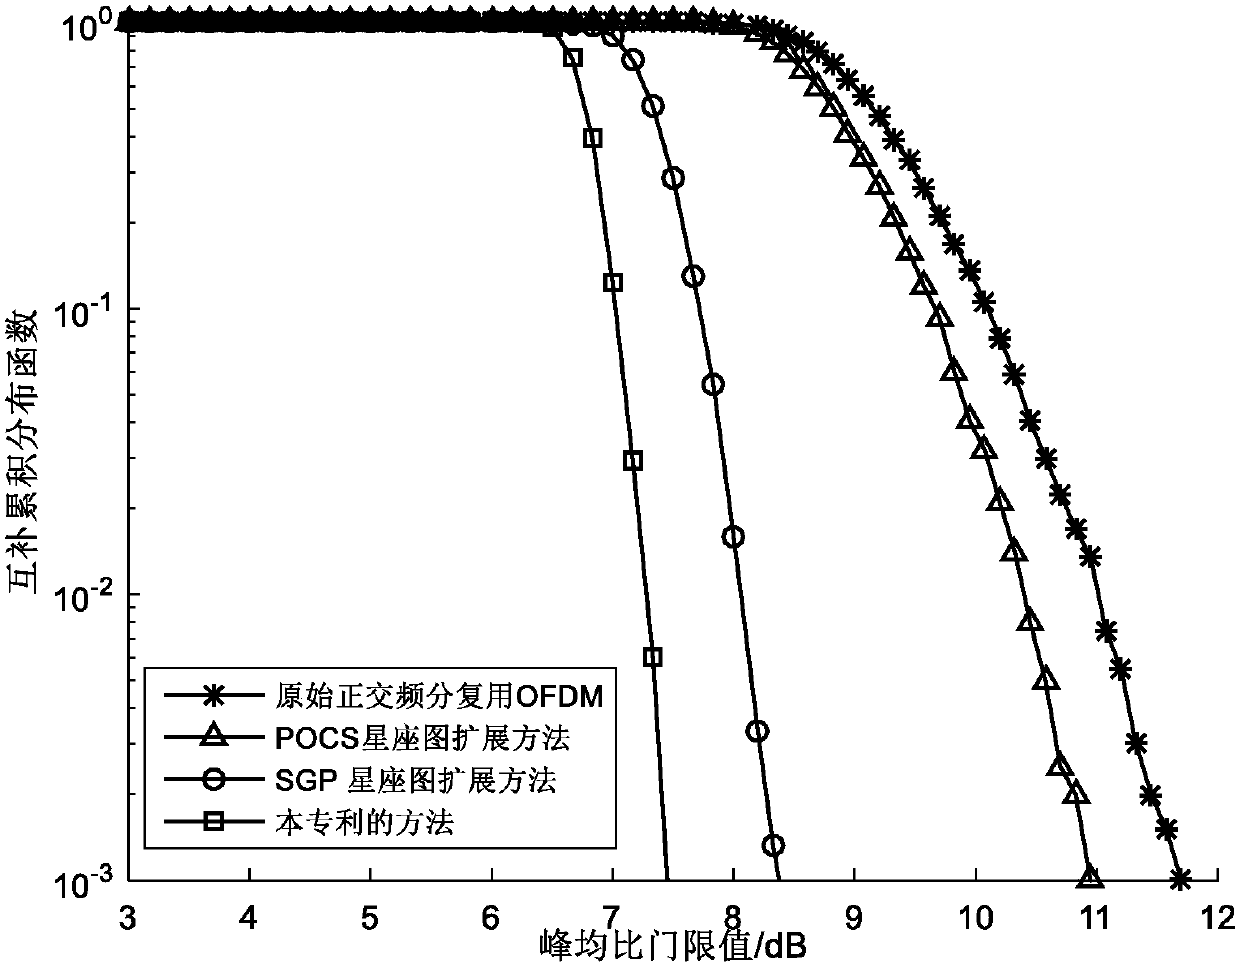 Method for suppressing signal peak-to-average ratio based on ACE algorithm